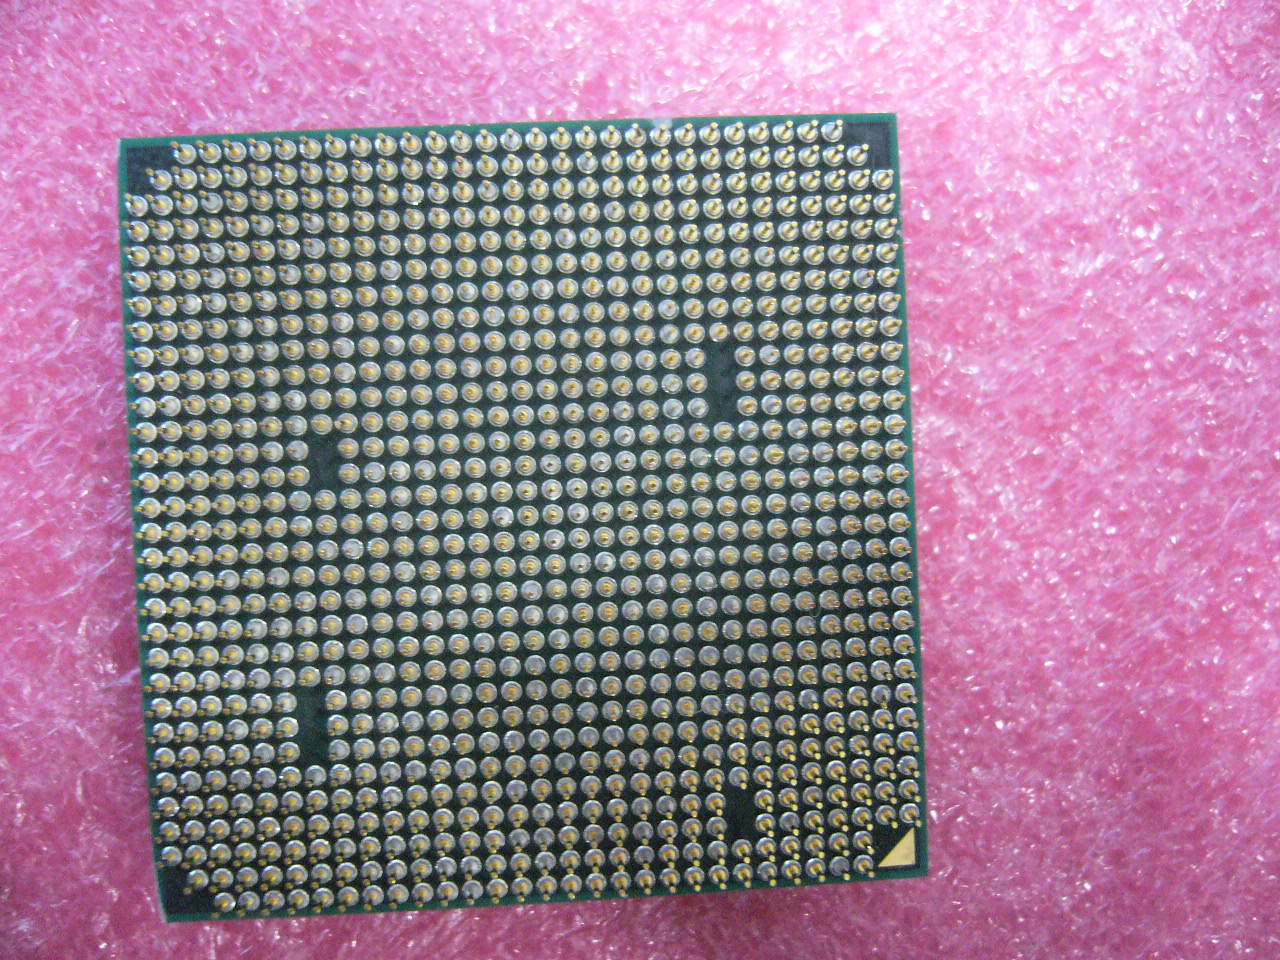 QTY 1x AMD Sempron 145 2.8 GHz Single-Core (SDX145HBK13GM) CPU Socket AM3 - zum Schließen ins Bild klicken